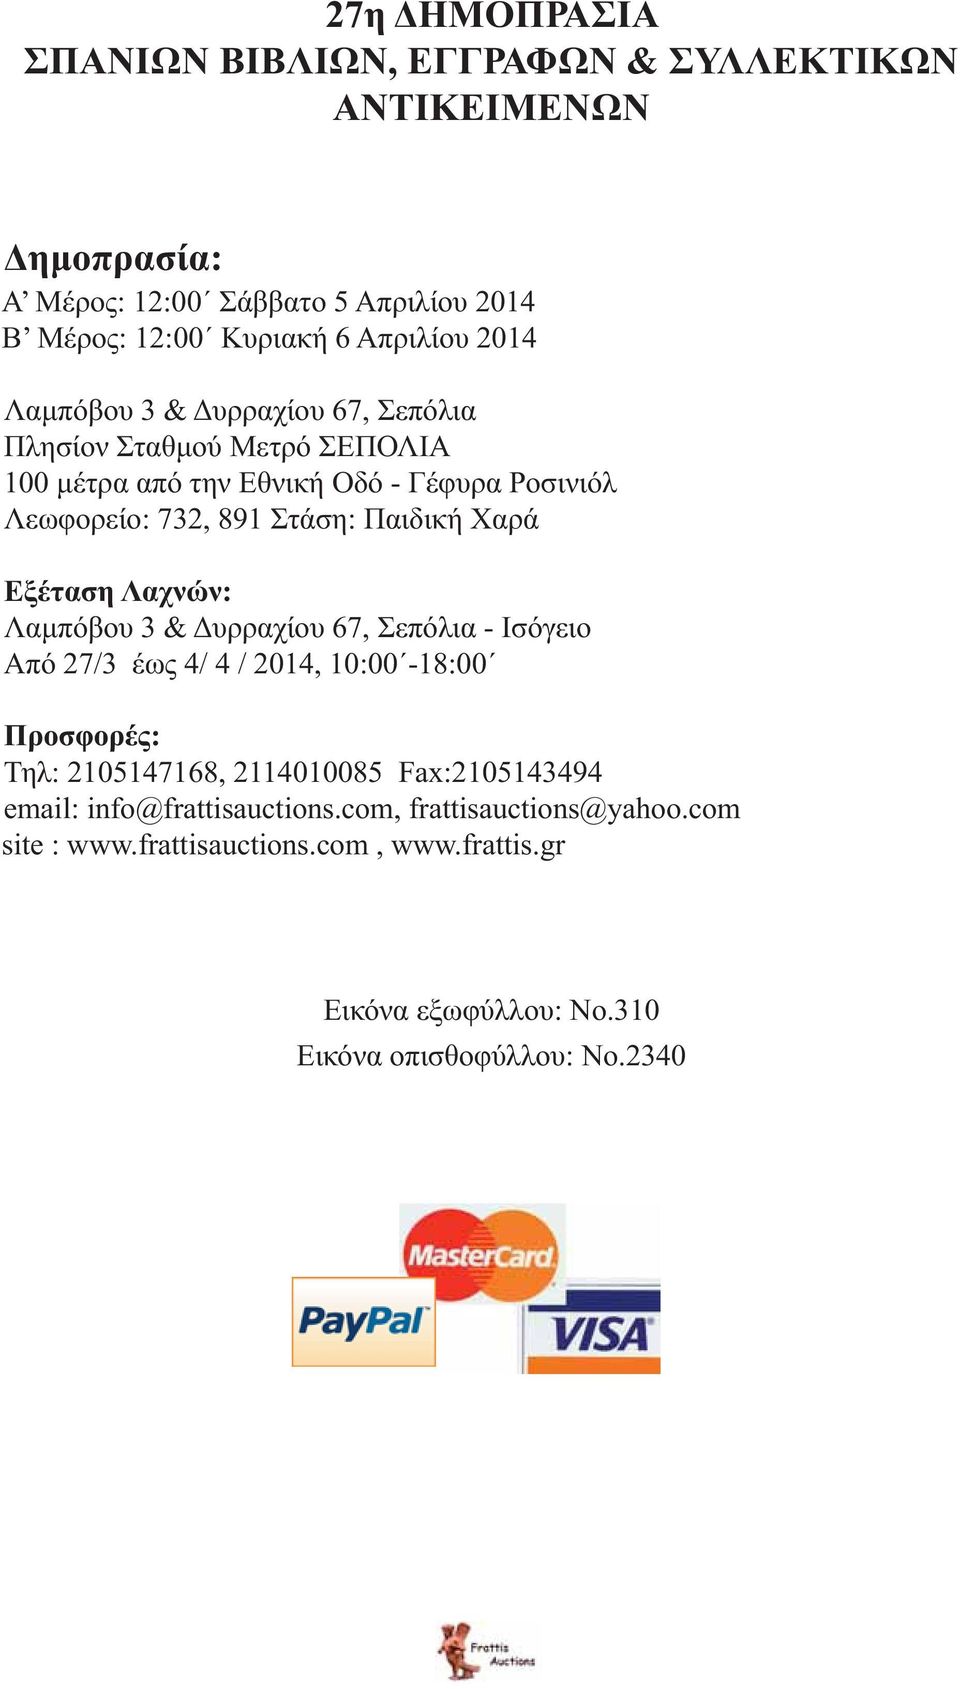 Χαρά Εξέταση Λαχνών: Λαμπόβου 3 & Δυρραχίου 67, Σεπόλια - Ισόγειο Από 27/3 έως 4/ 4 / 2014, 10:00-18:00 Προσφορές: Τηλ: 2105147168, 2114010085